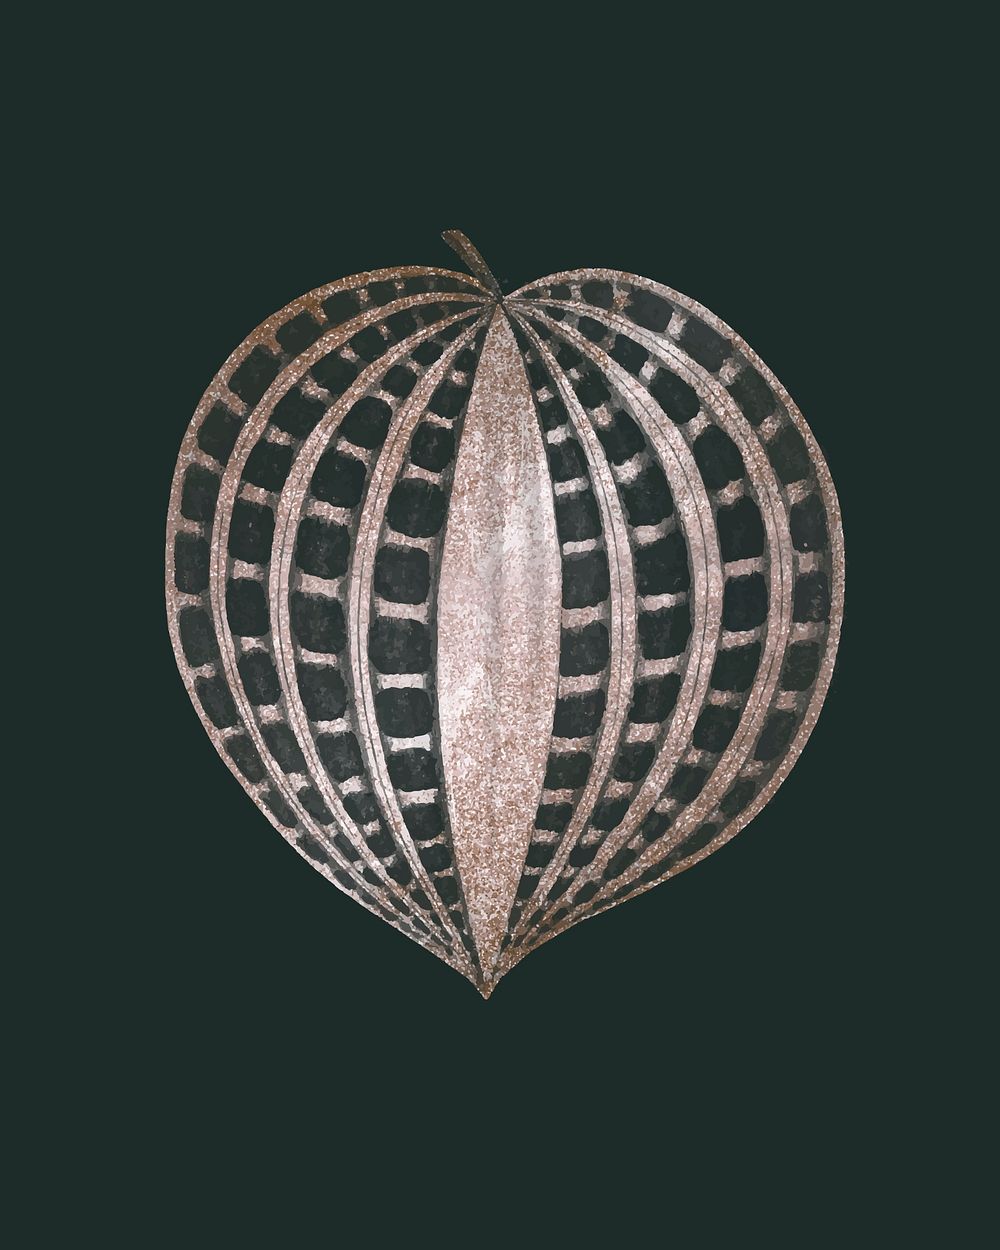 Seersucker leaf vector, remix from original artwork by Benjamin Fawcett